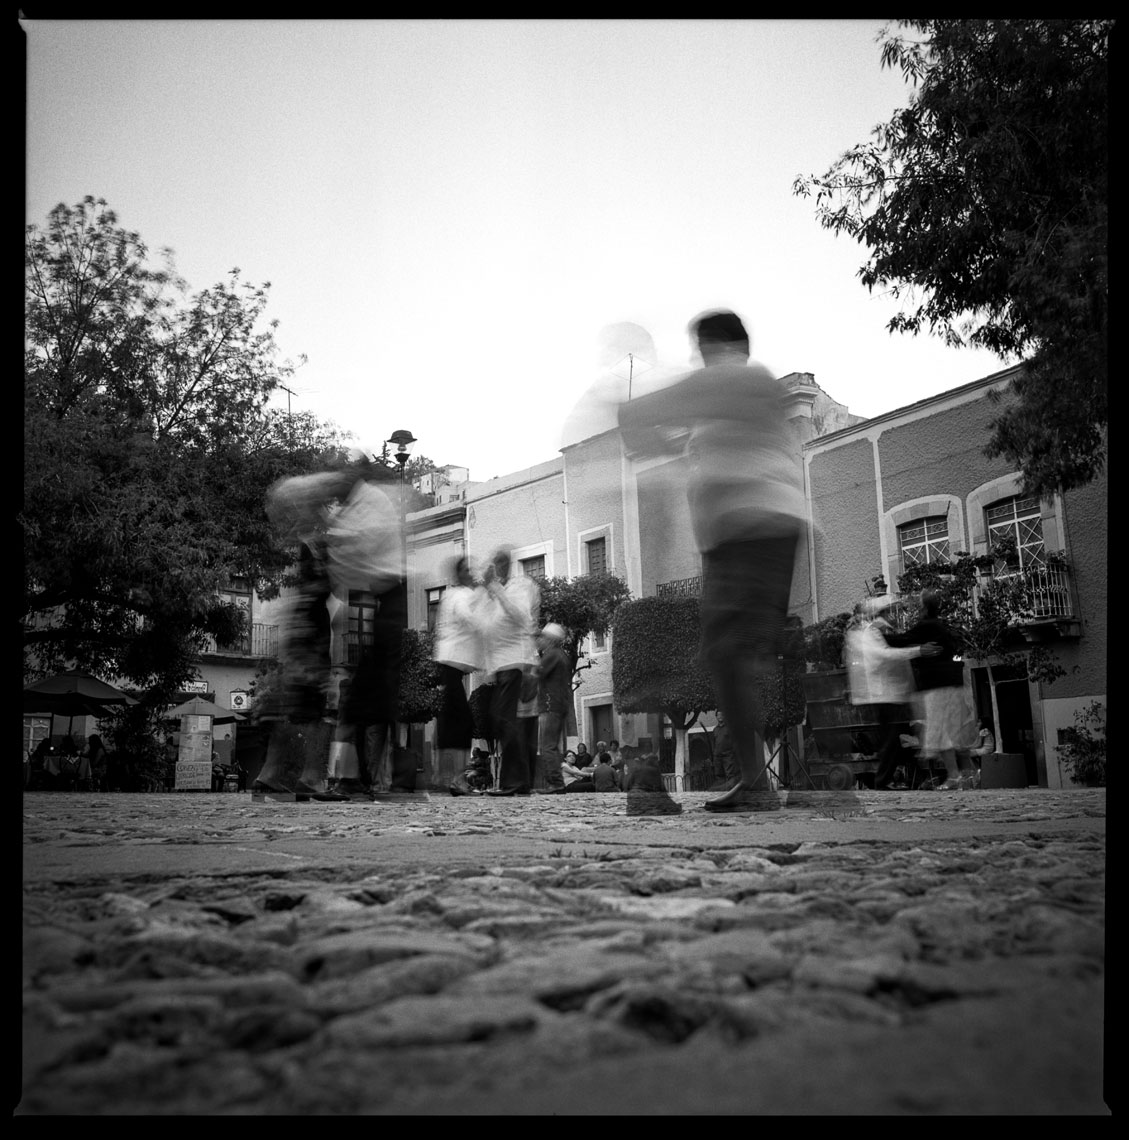  Dancing on the square Guanajuato, Mexico, 2012    1:1  